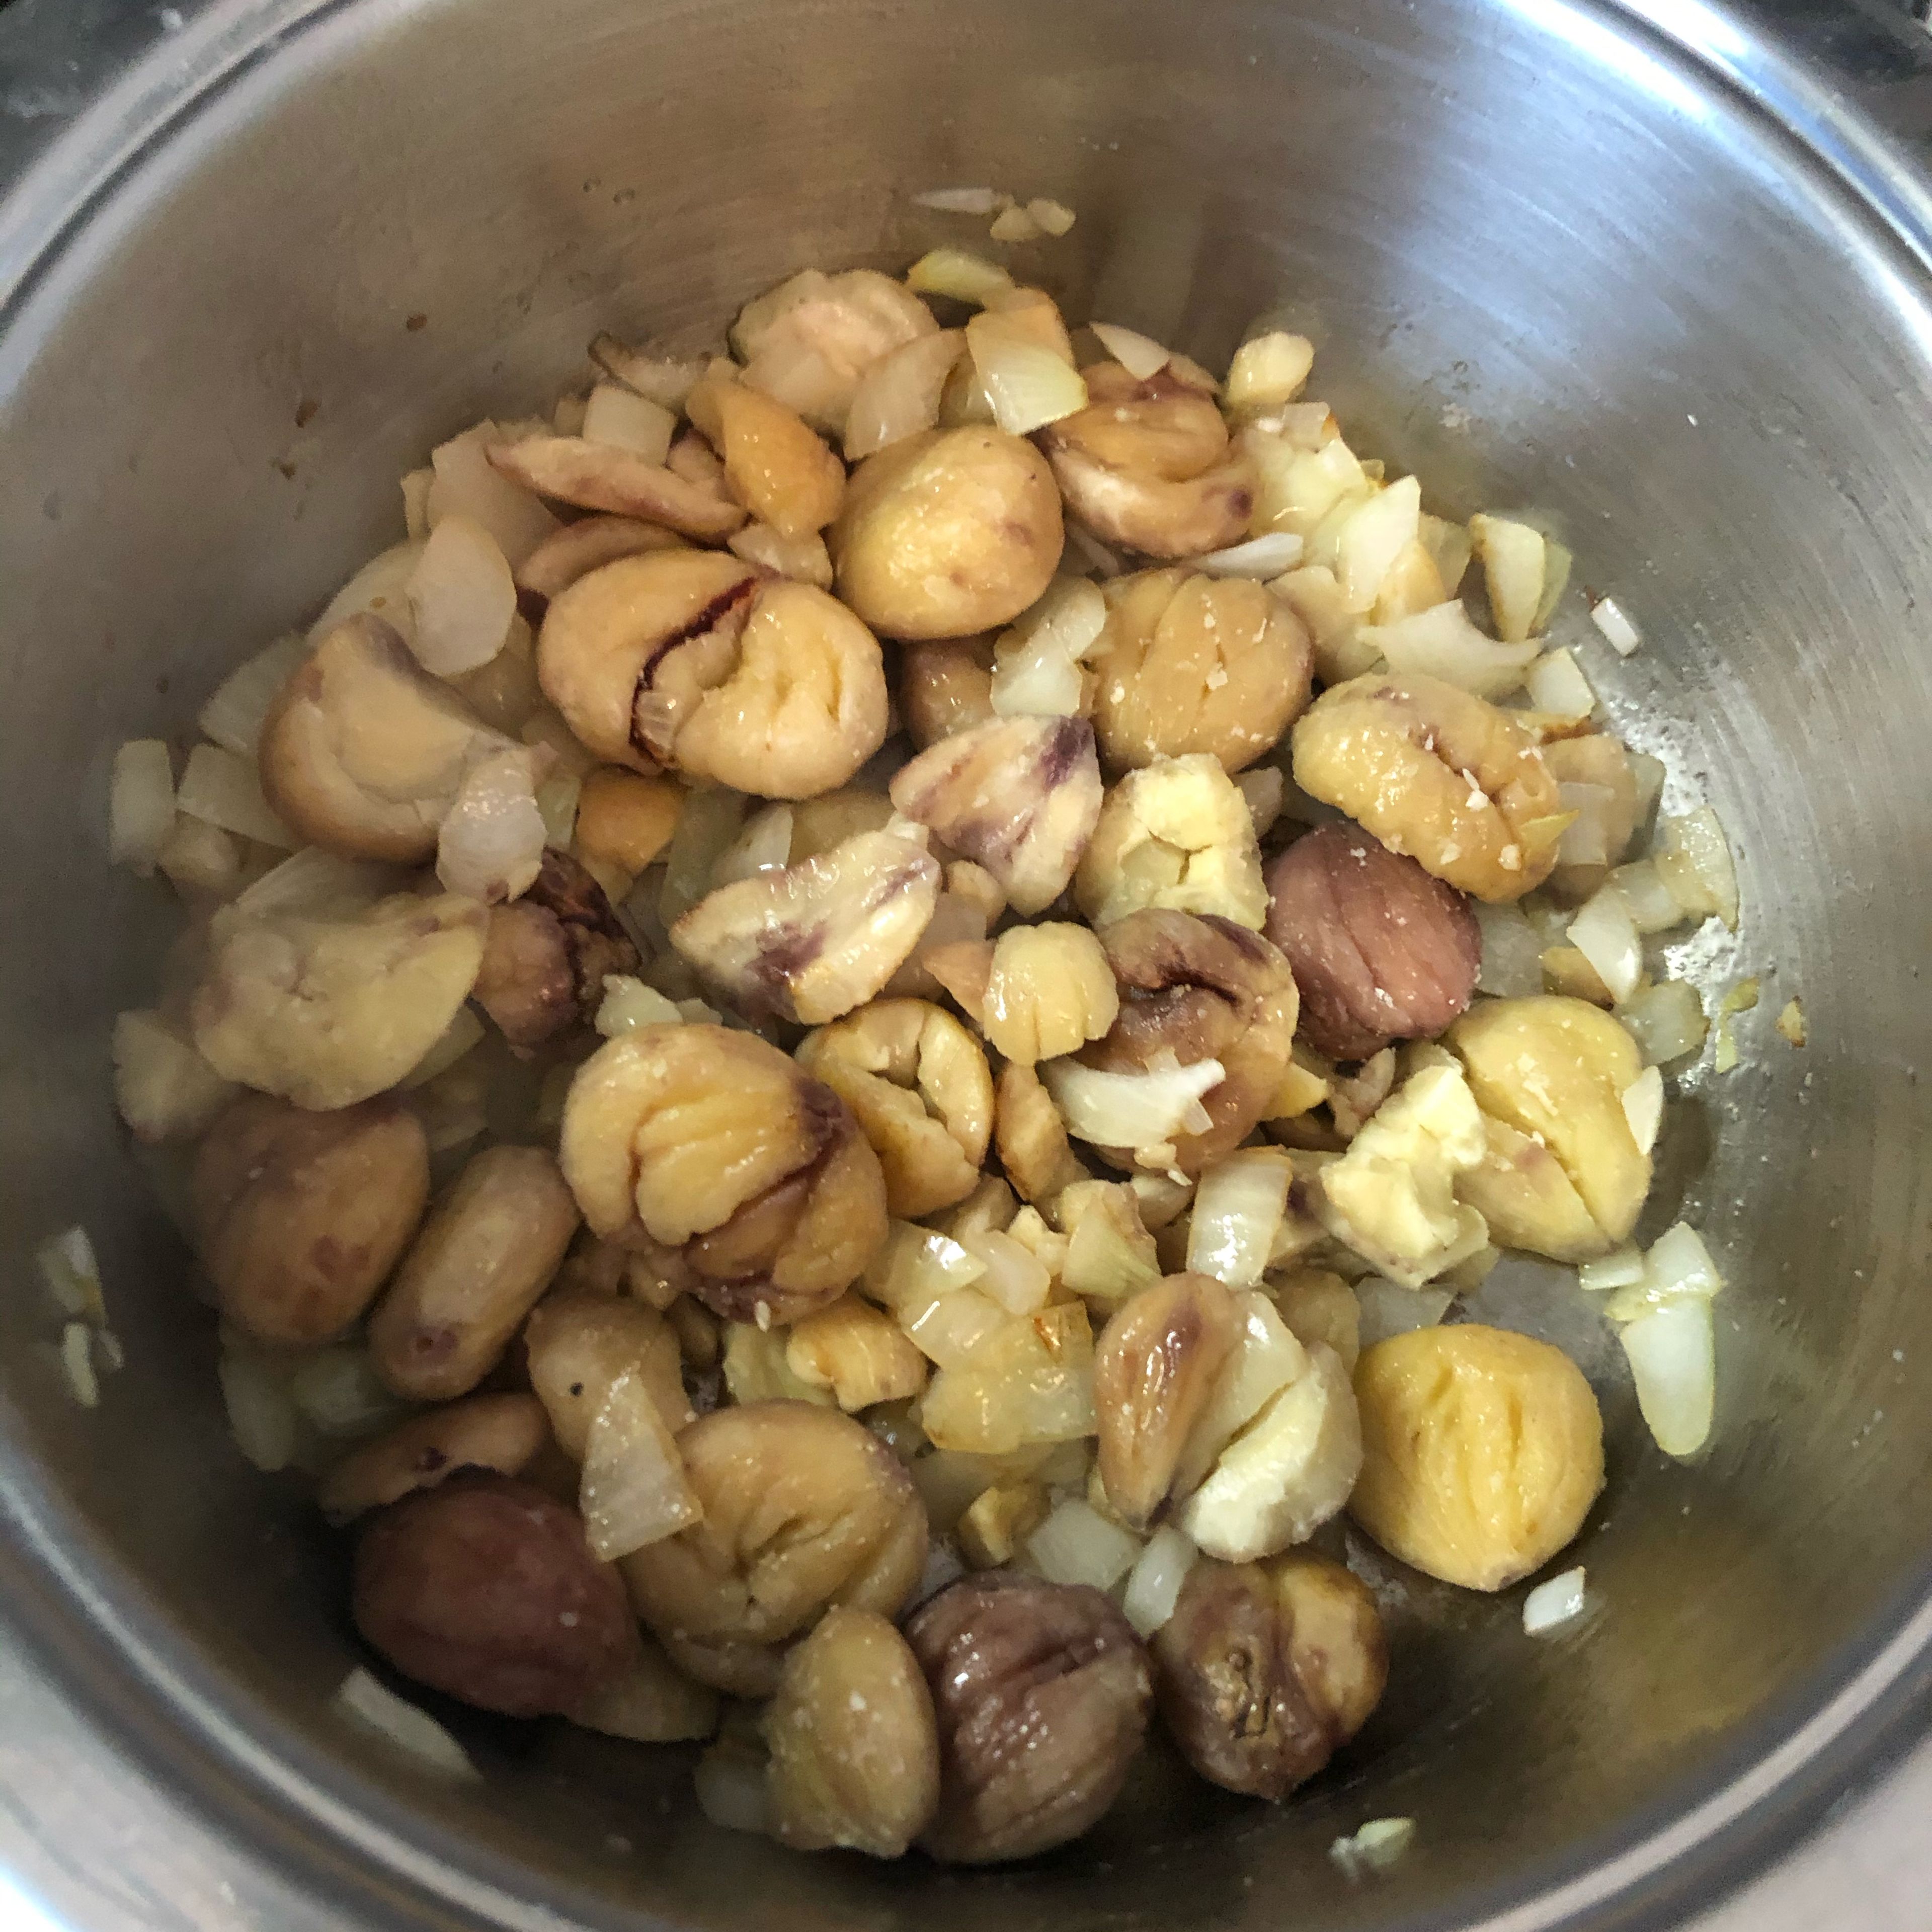 Zwiebel in Öl anschwitzen. Maroni dazugeben und 2 Minuten anrösten. Kartoffel (grob geschnitten) hinzufügen und mit der Gemüsebrühe aufgießen.